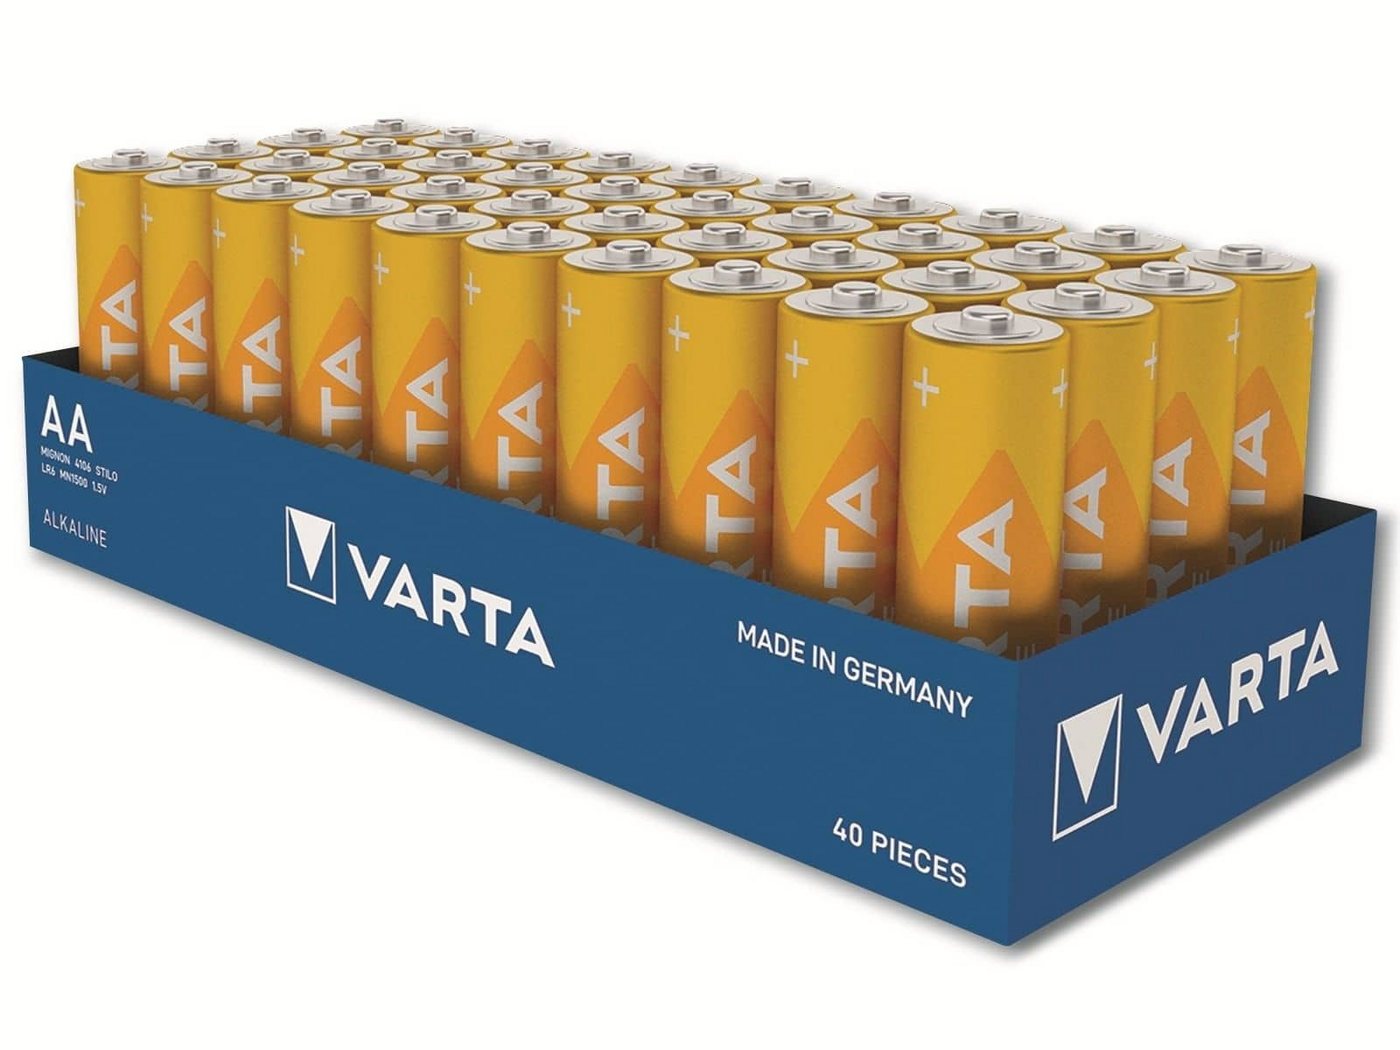 VARTA VARTA Batterie Alkaline, Mignon, AA, LR06, 1.5V Batterie von VARTA